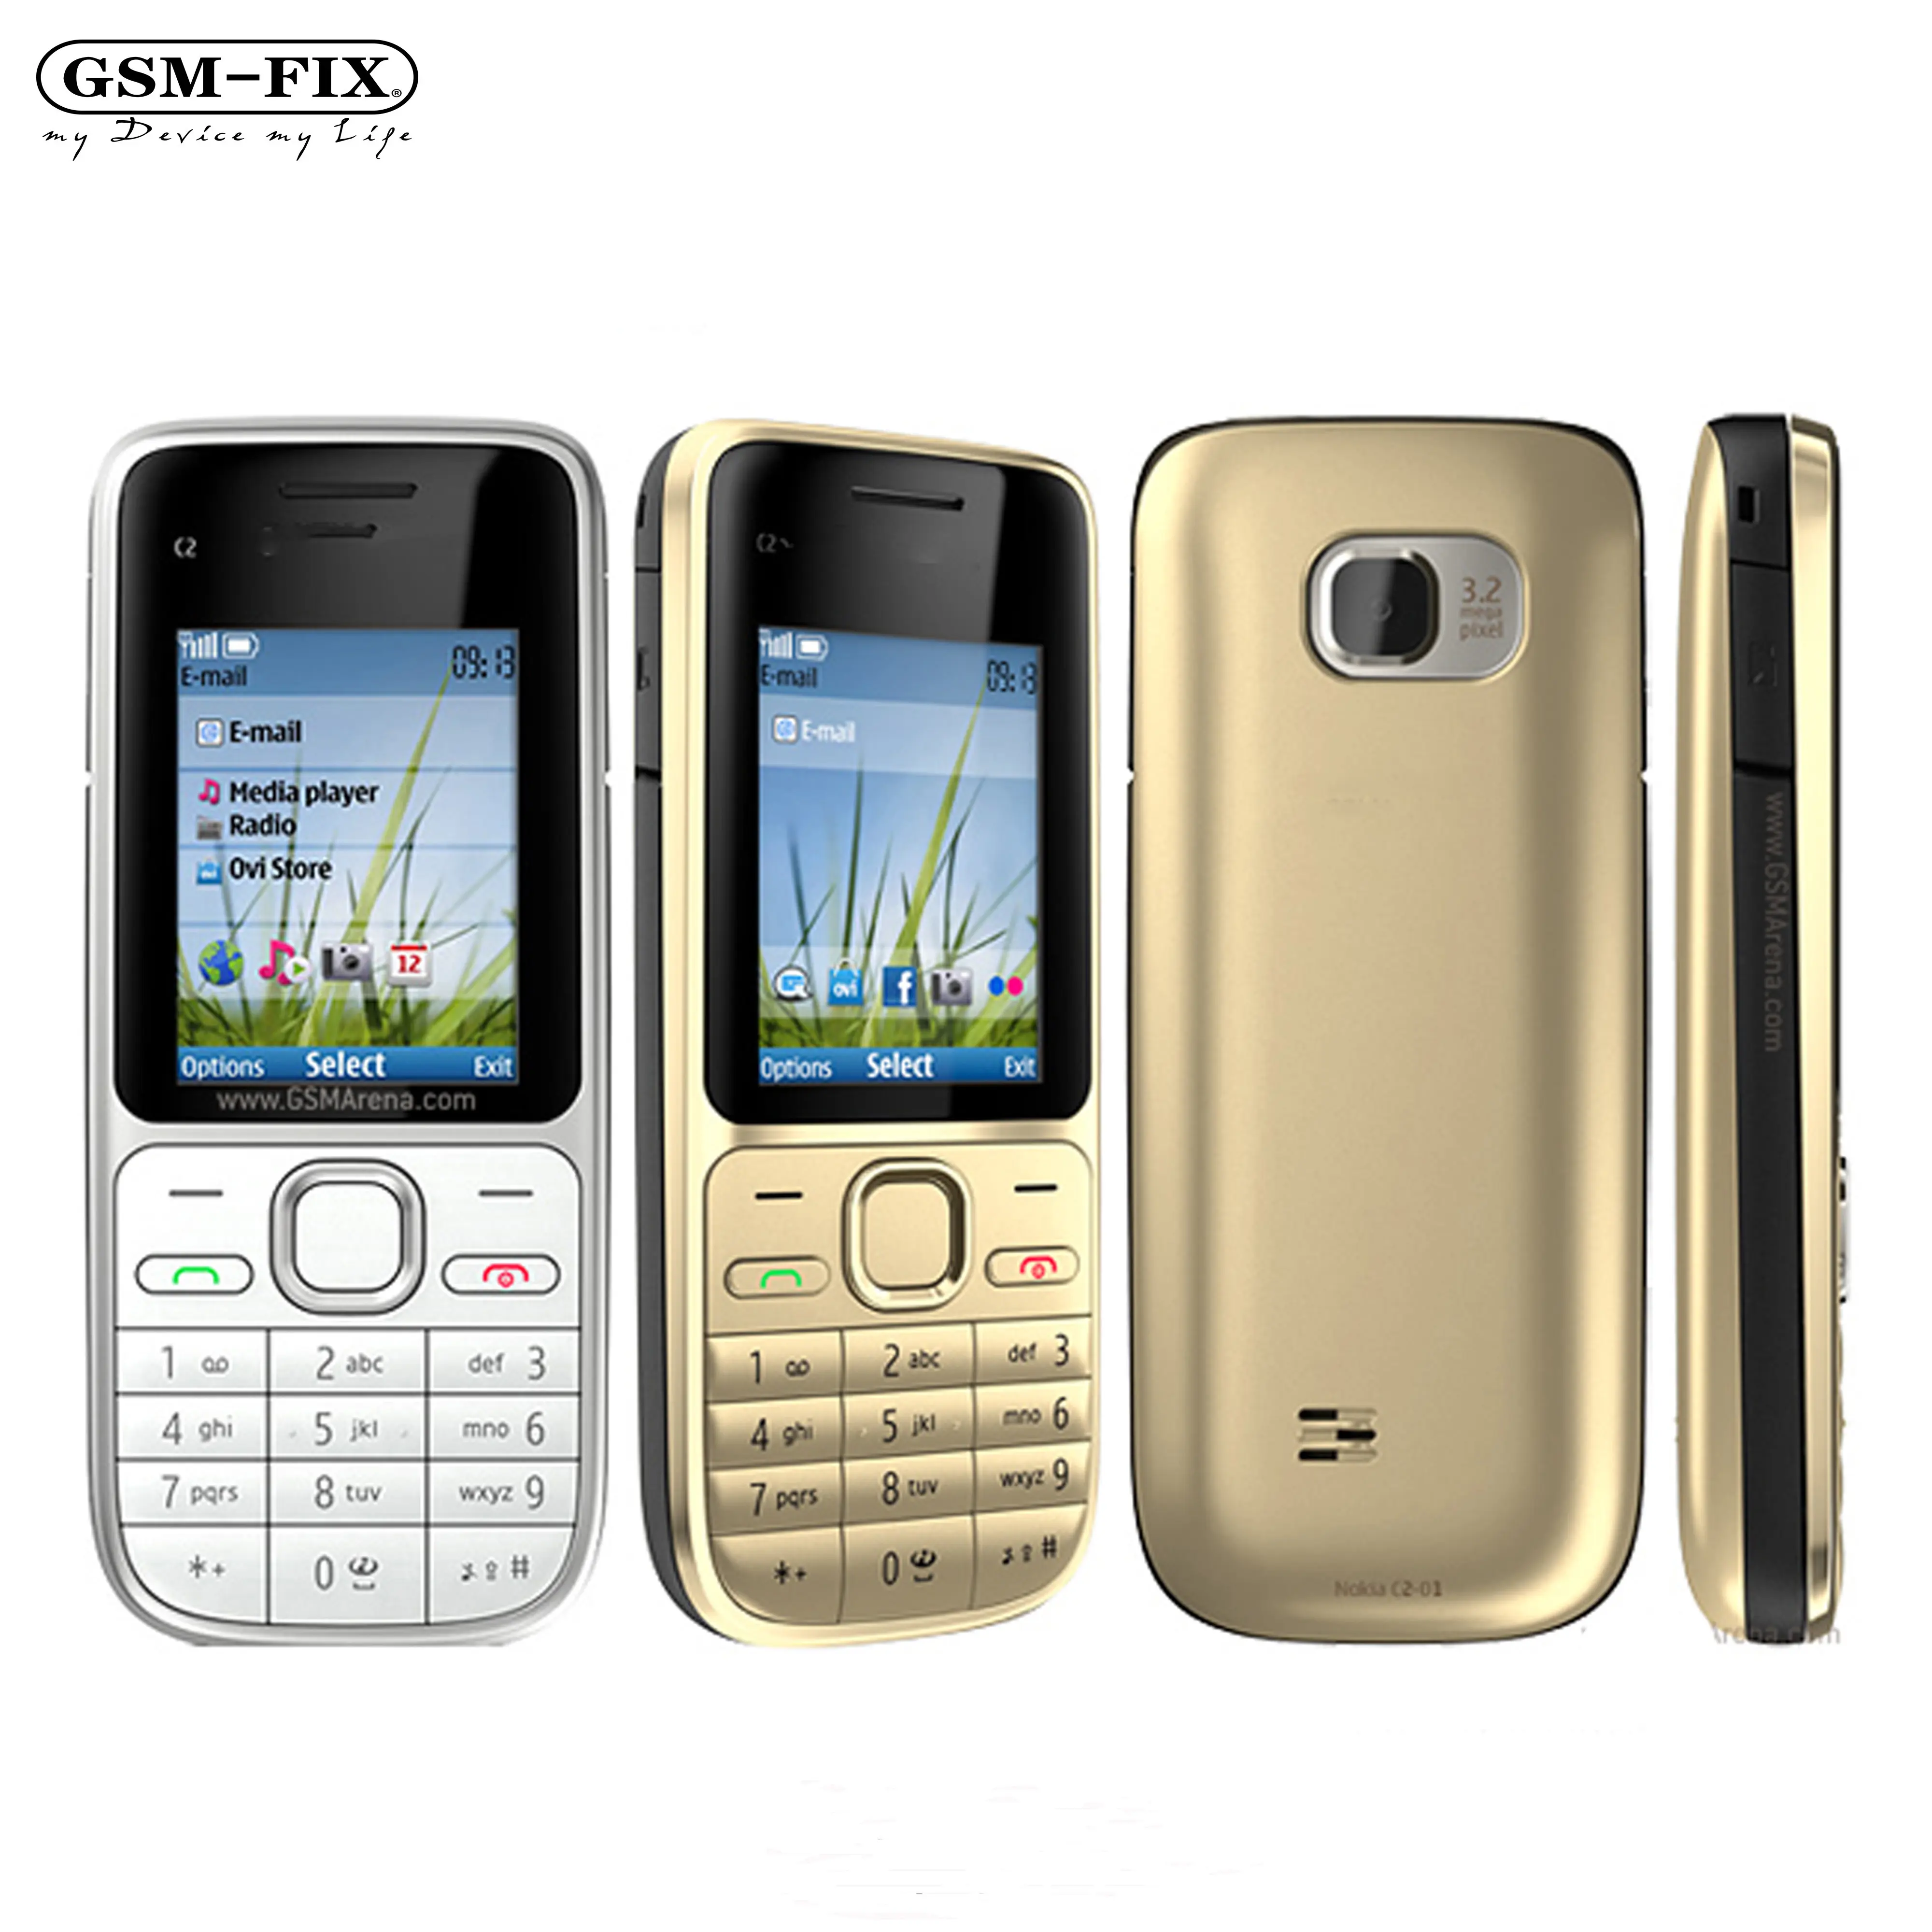 Nokia C2 GSM-FIX 3.2MP 2.0 "英語/ロシア語/ヘブライ語キーボードシングルコアブラック/ゴールド2G3G携帯電話用にC2-01オリジナルロック解除